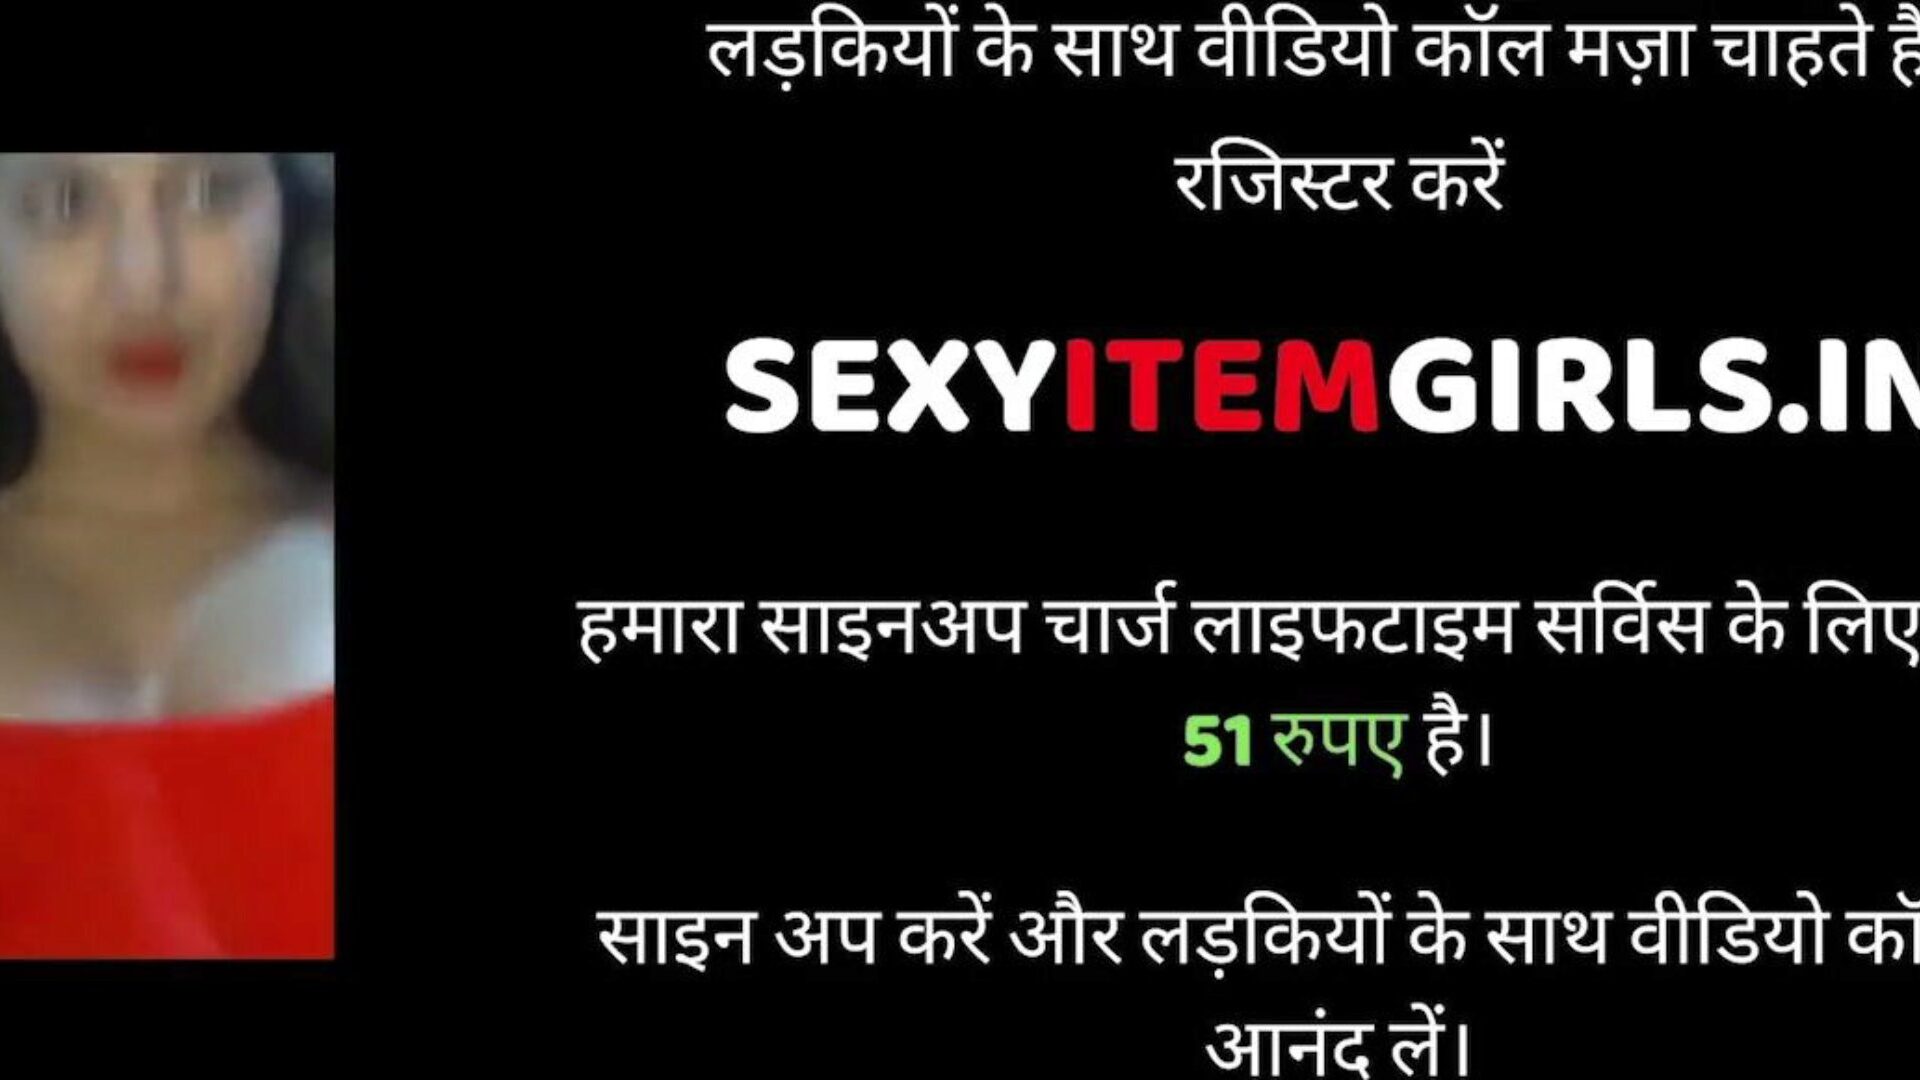 Indiase man en vrouw seks, gratis seks xnxx porno 95: xhamster bekijk Indiase man en vrouw seksvideo op xhamster, de dikste hd-bultbuissite met tonnen gratis seks xnxx hardcore en sperma in poesje pornofilms